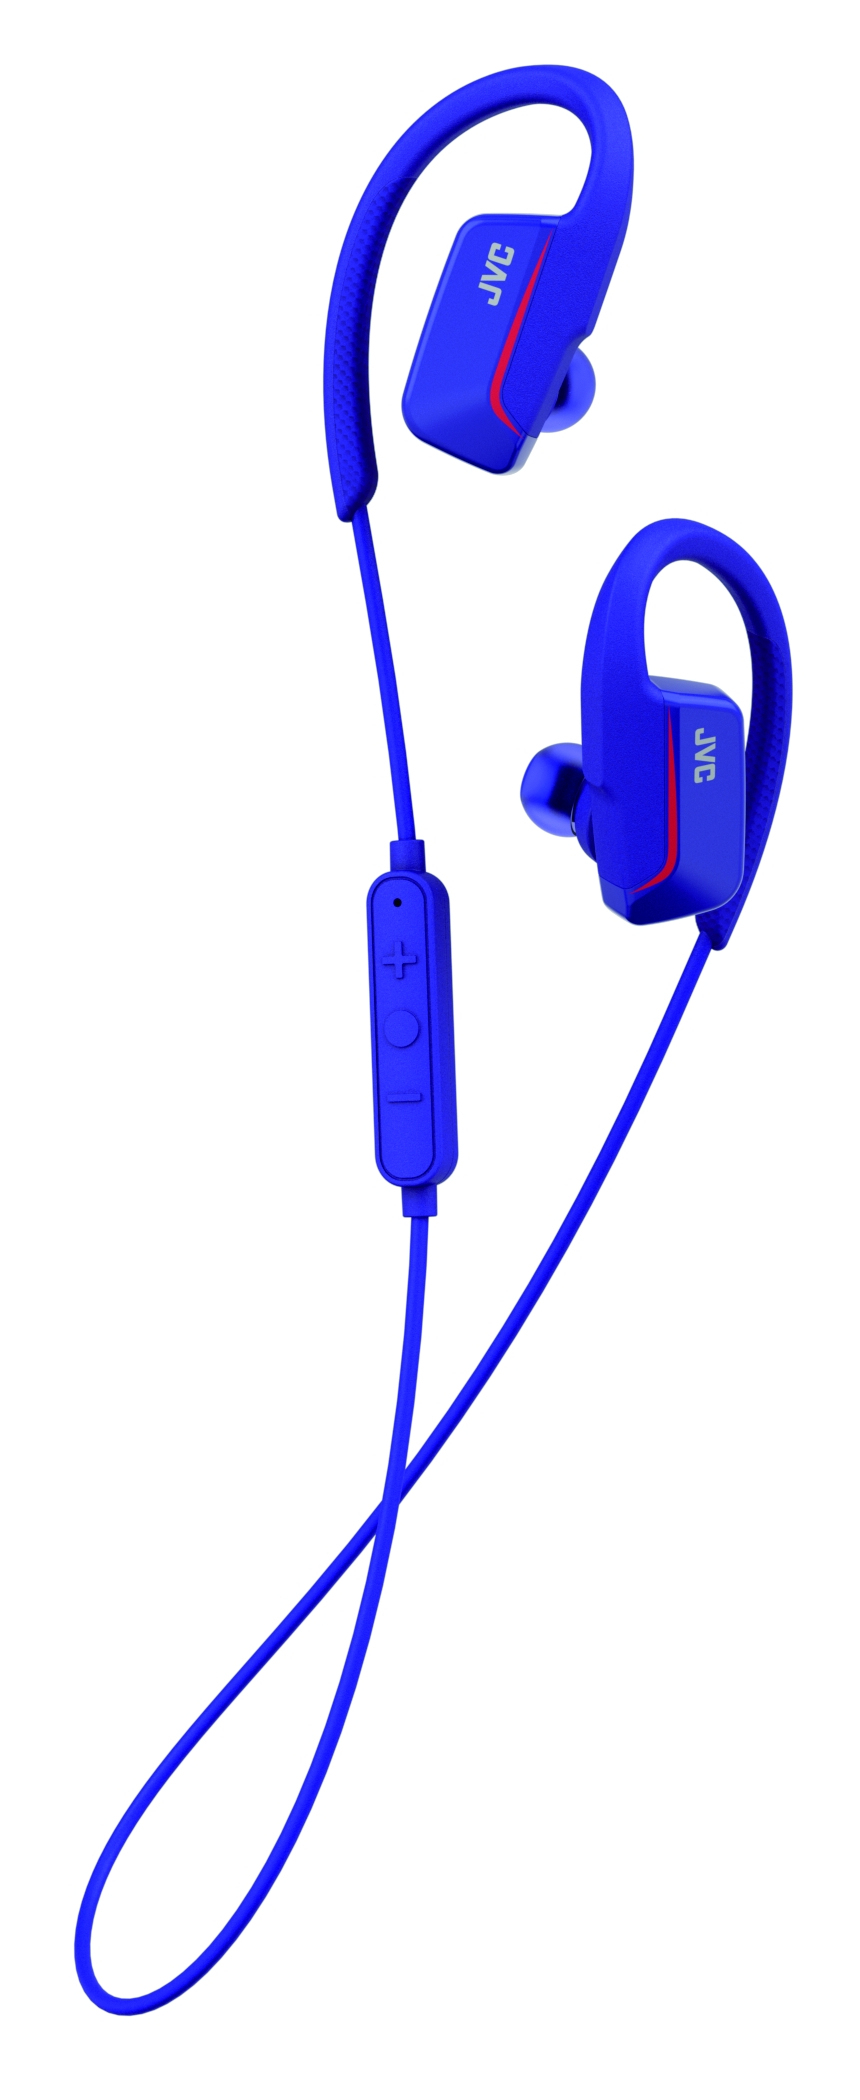 JVC HA-EC30 Blue Sports In-Ear Earphones